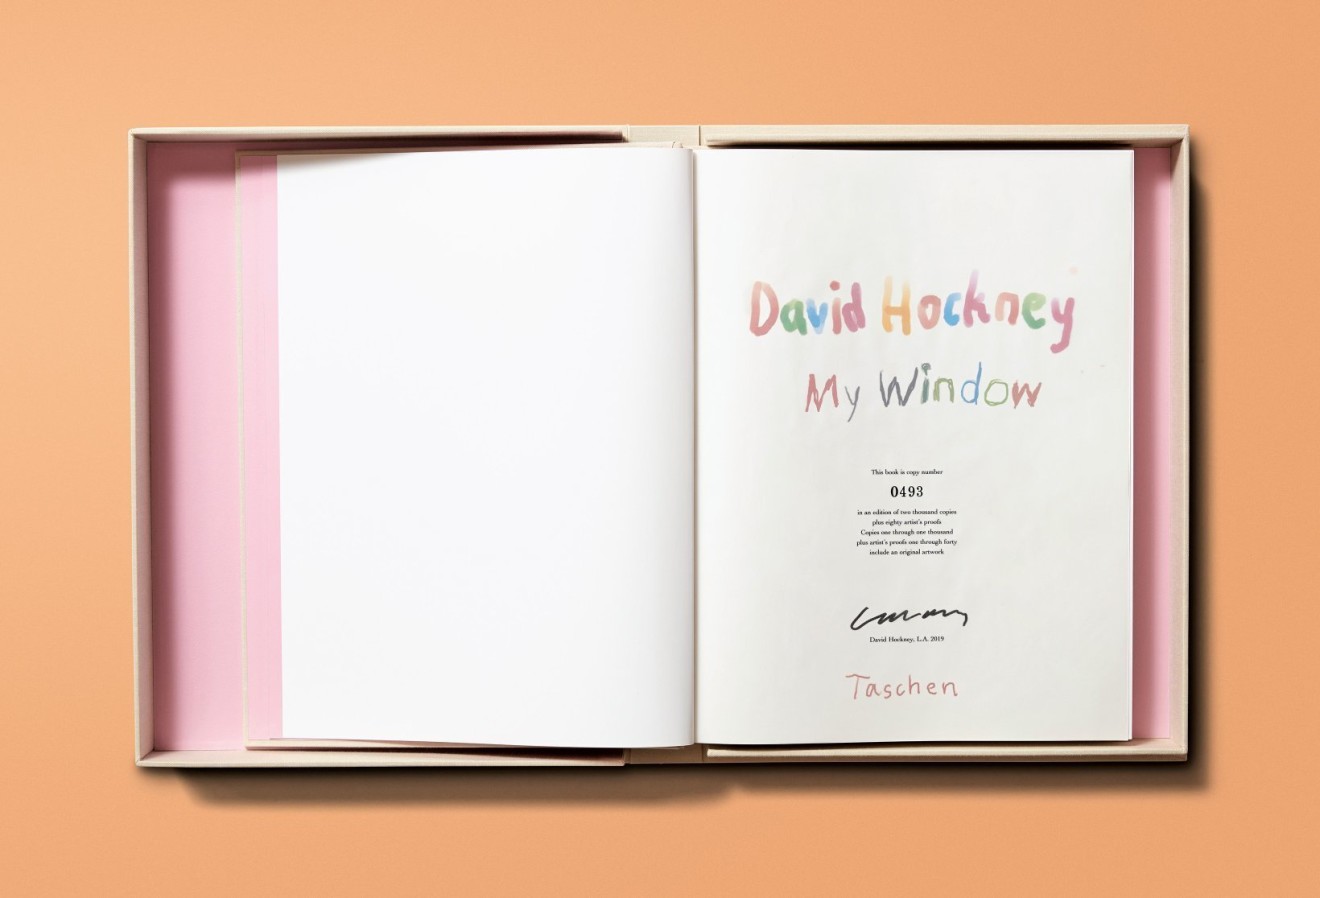 David Hockney, David Hockney. My Window, 2019